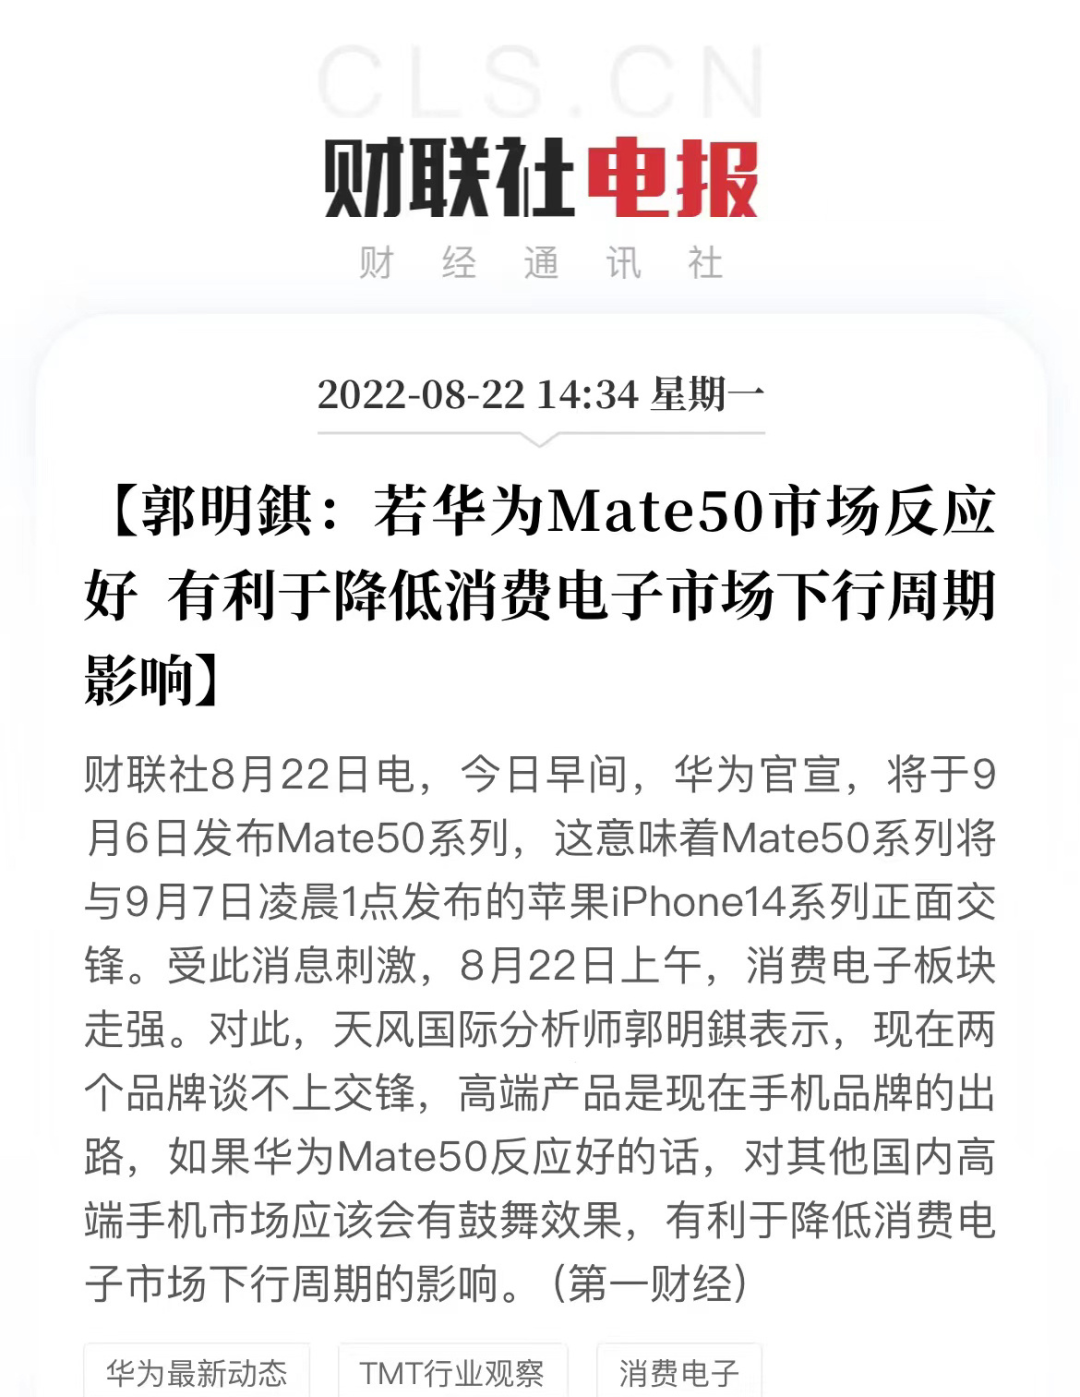 Mate50蓄势待发，或成为华为手机业务最关键一战！-开源基础软件社区